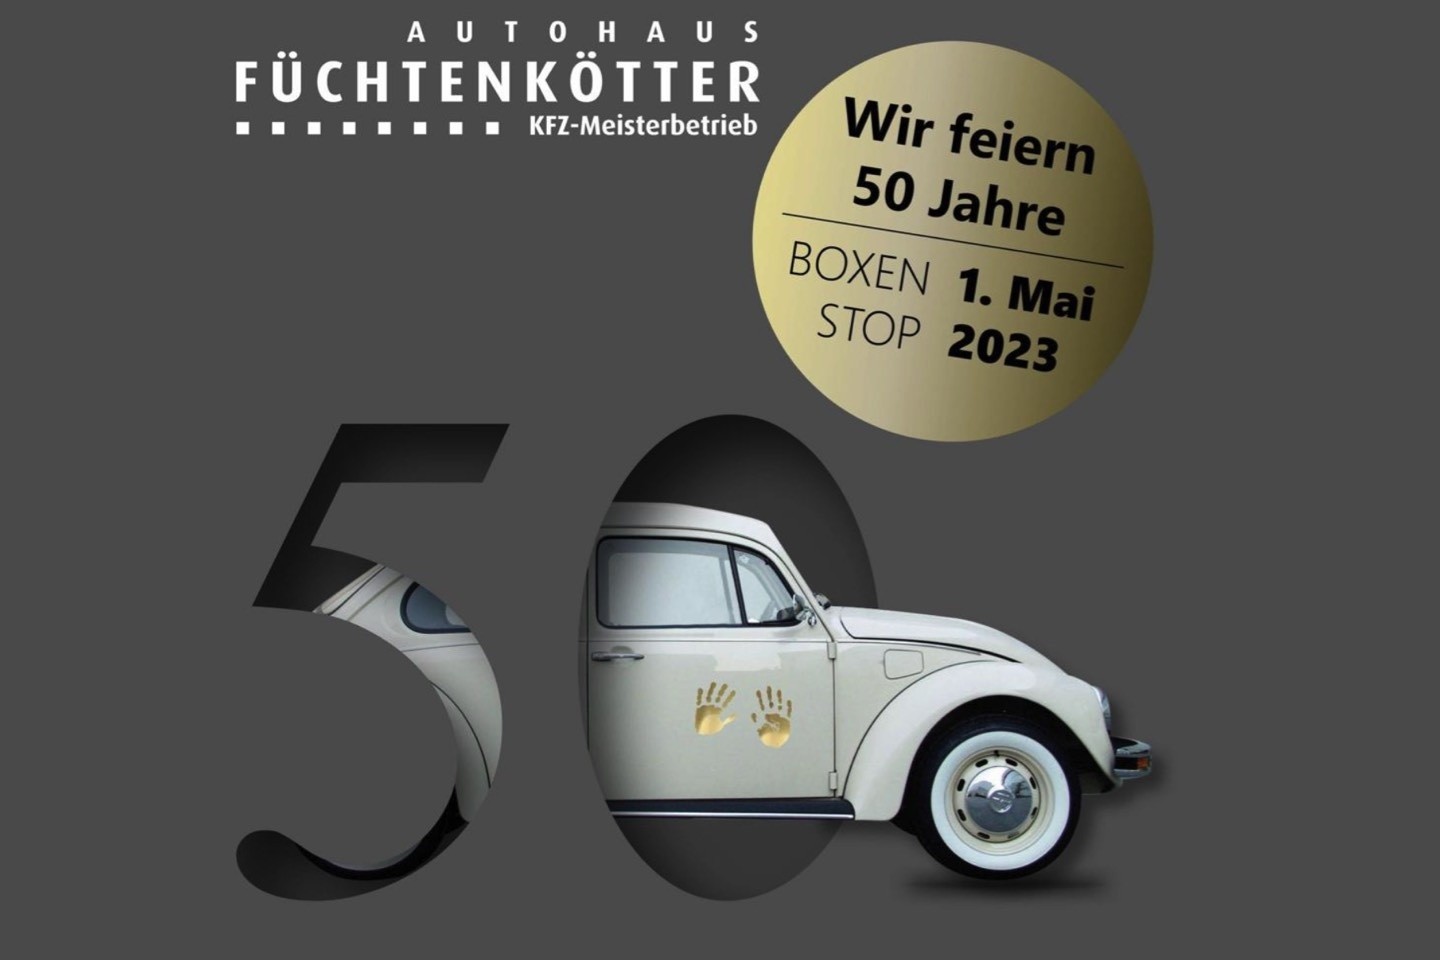 Autohaus Füchtenkötter,KFZ,50 Jahre,Jubiläum,Warendorf,Boxenstop,